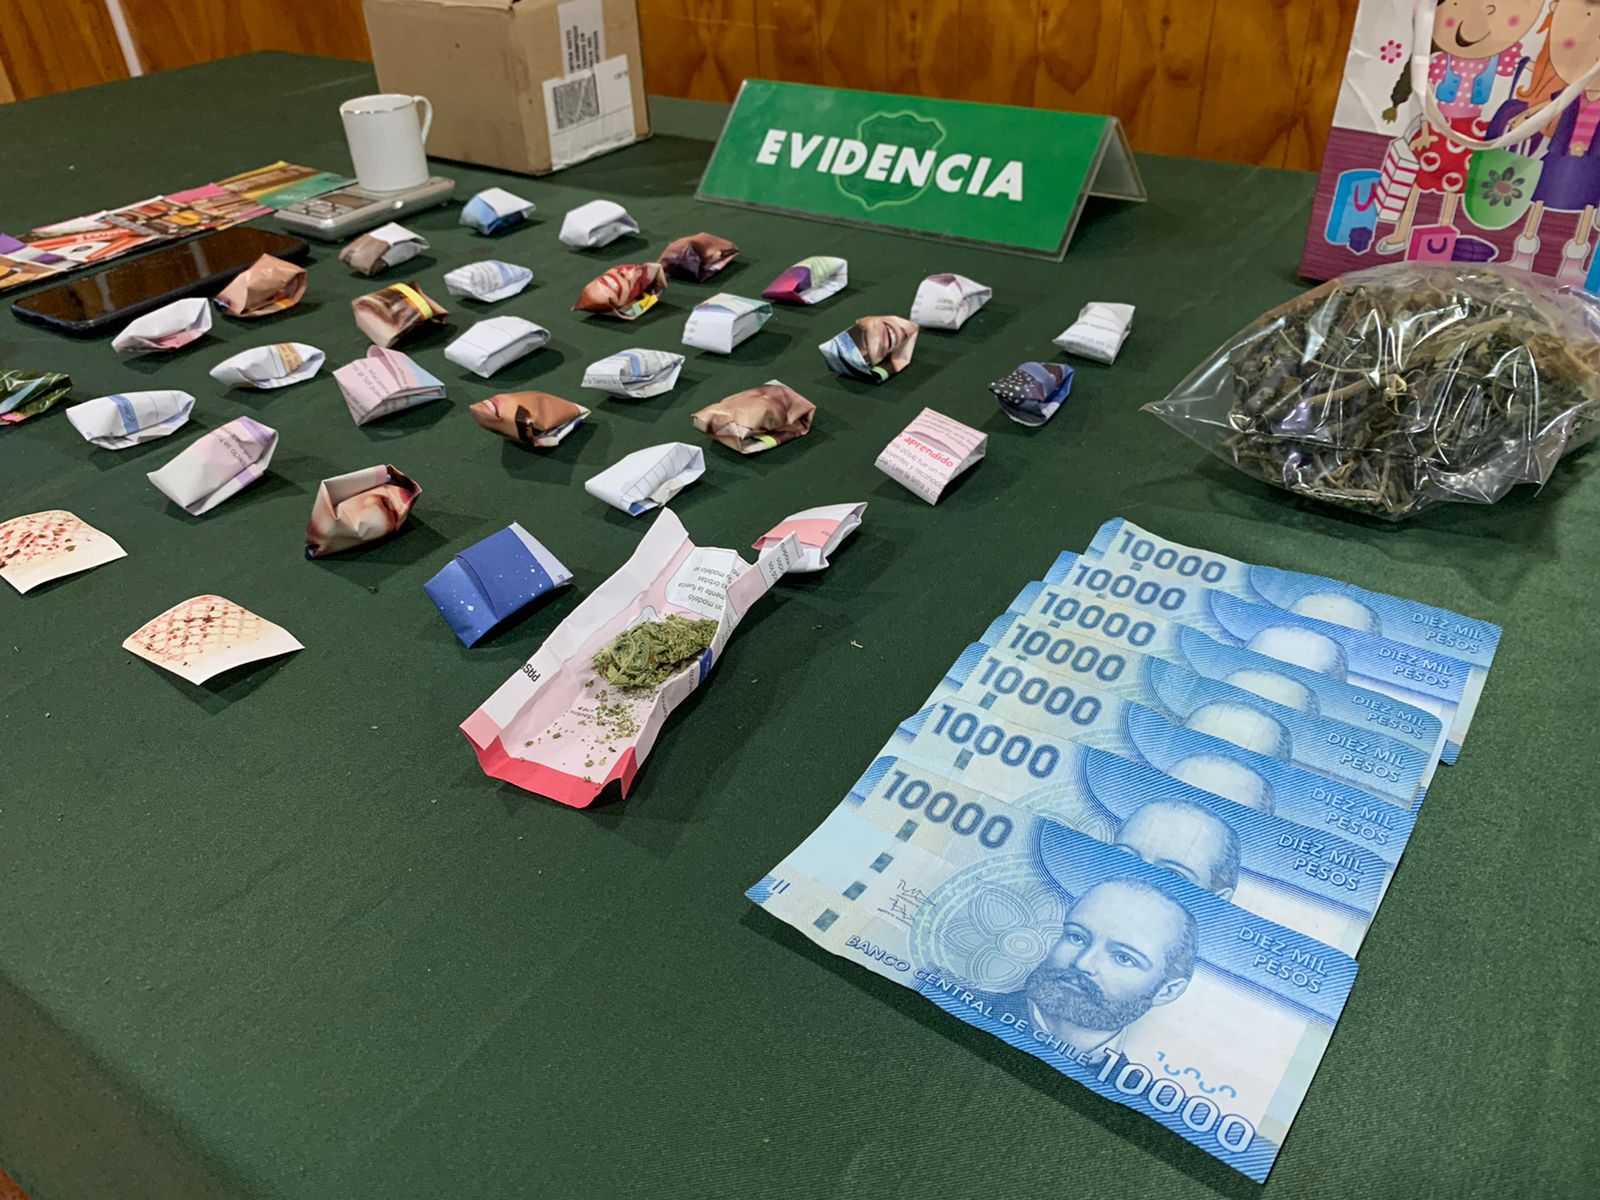 Carabineros detiene en Punta Arenas a traficante de marihuana en pequeñas cantidades | Operativo policial realizado en la población Cumbres Patagónicas